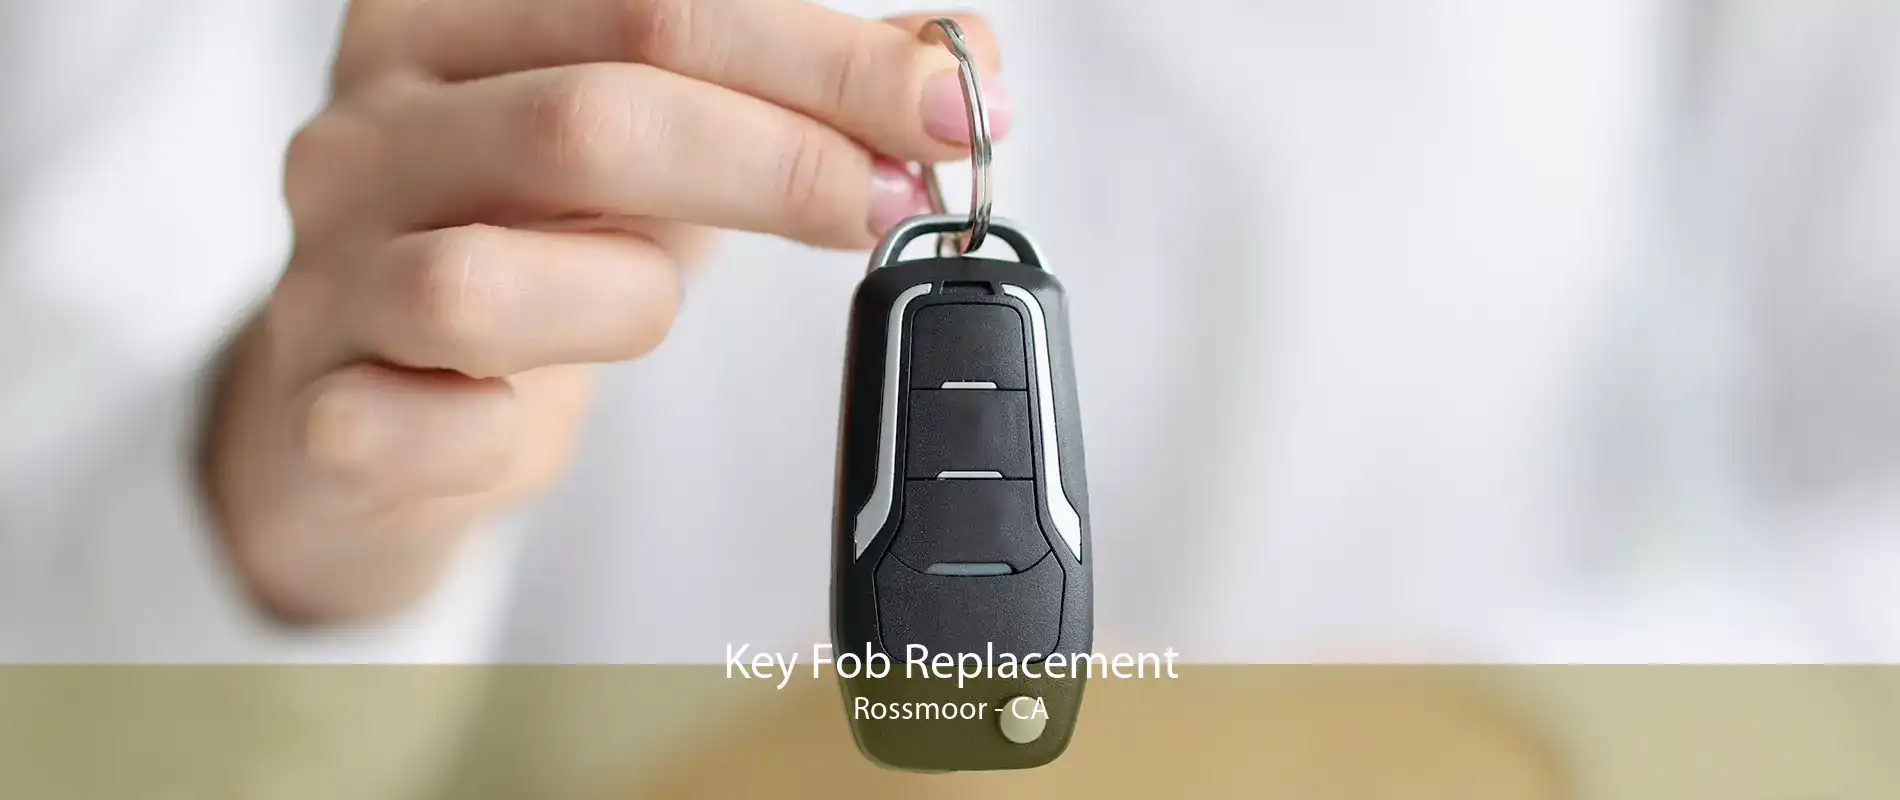 Key Fob Replacement Rossmoor - CA